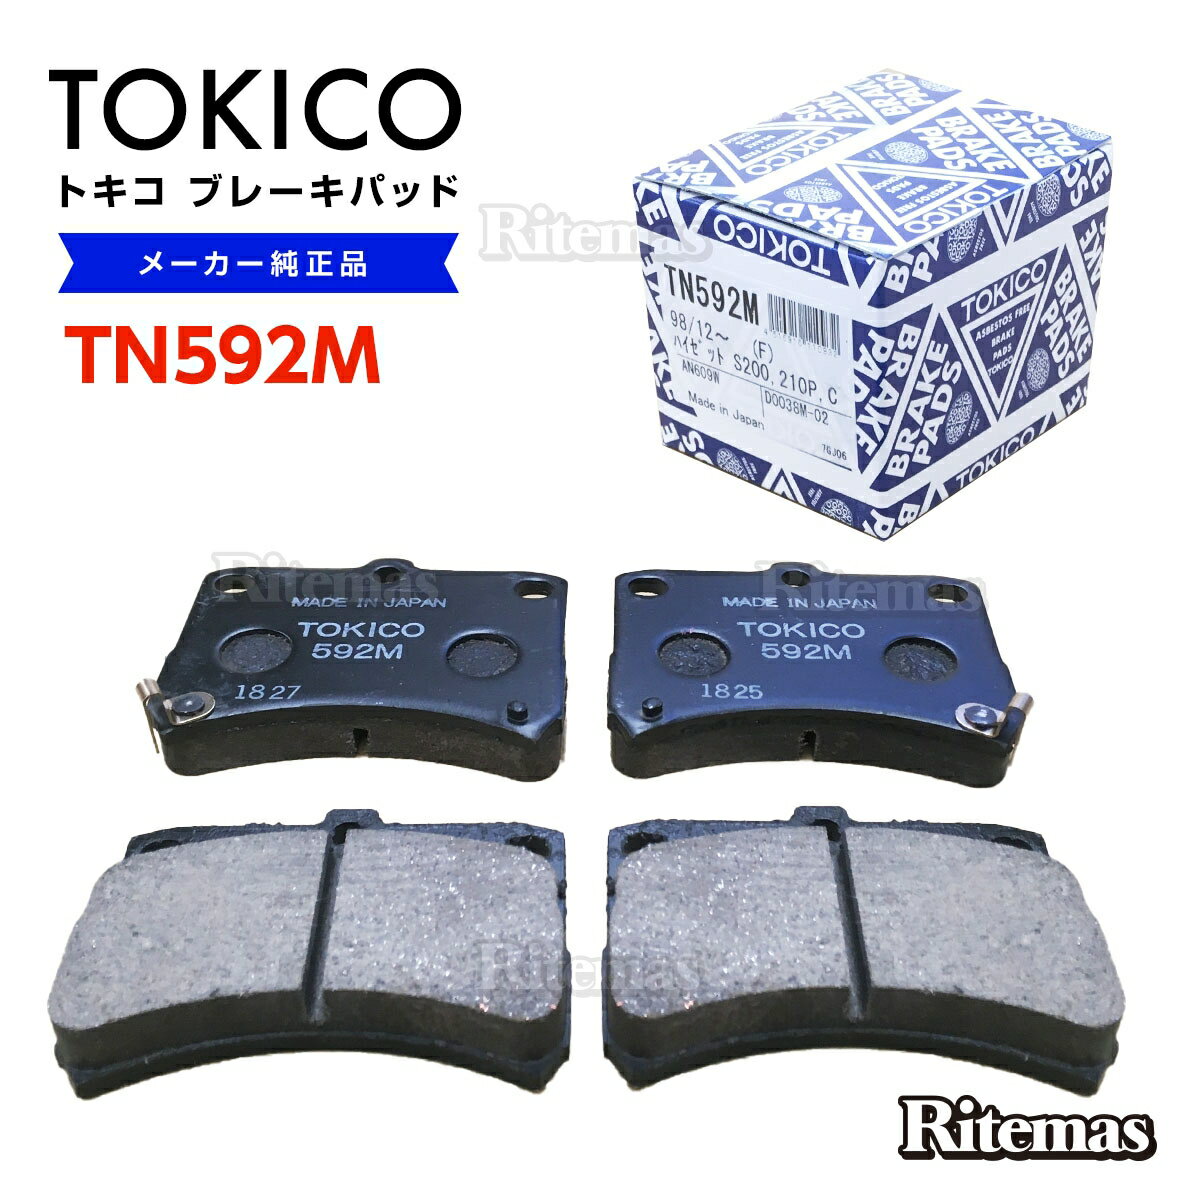 TOKICO トキコ ブレーキパッド TN592M スバル サンバーディアス/サンバーバン S321,S331 フロント用 ディスクパッド 左右set 4枚 09/08-